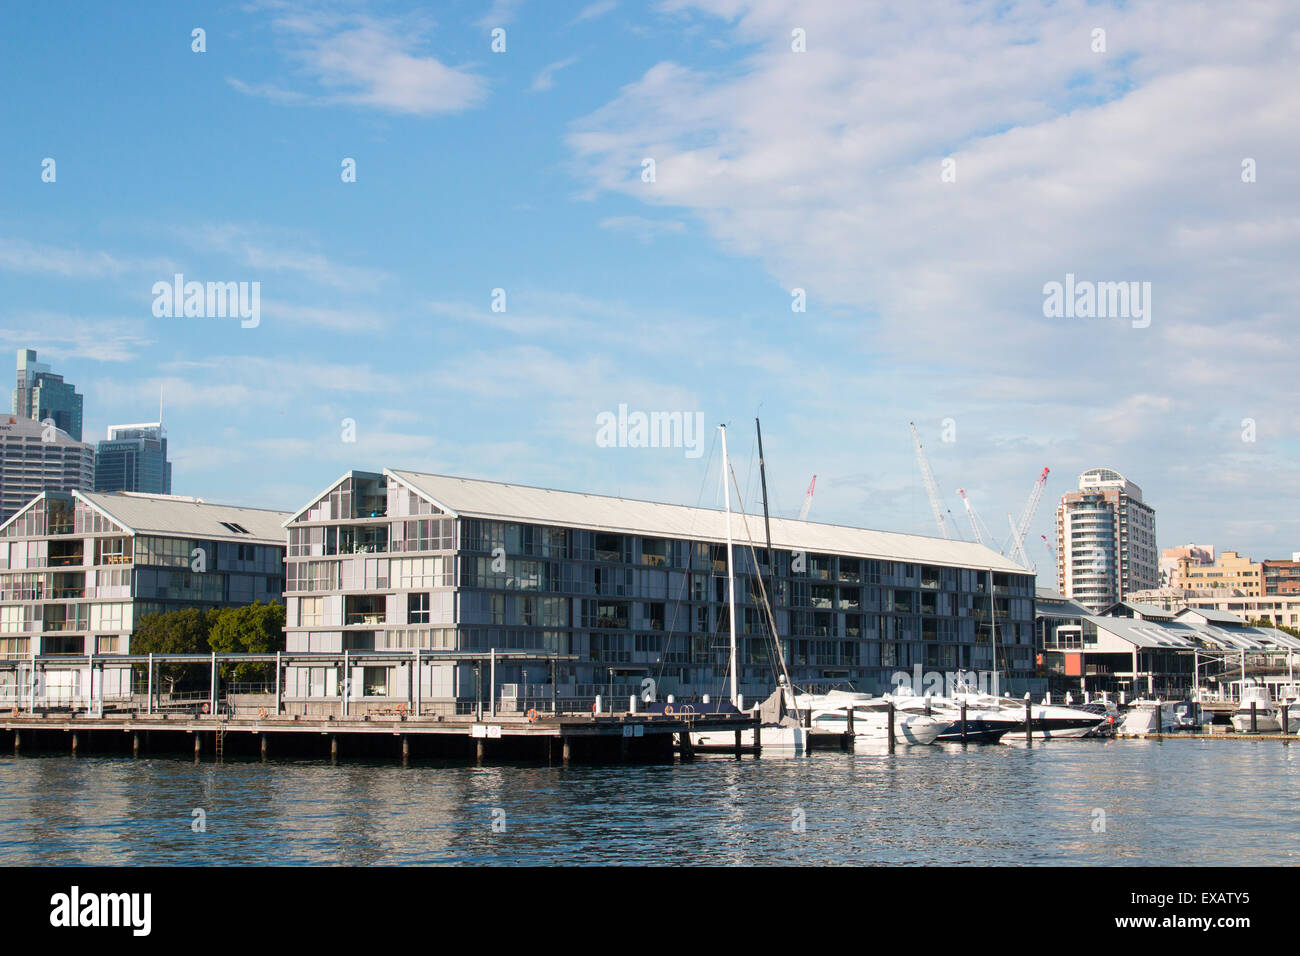 Jones Bay Wharf dans Pyrmont,Sydney, Australie Banque D'Images